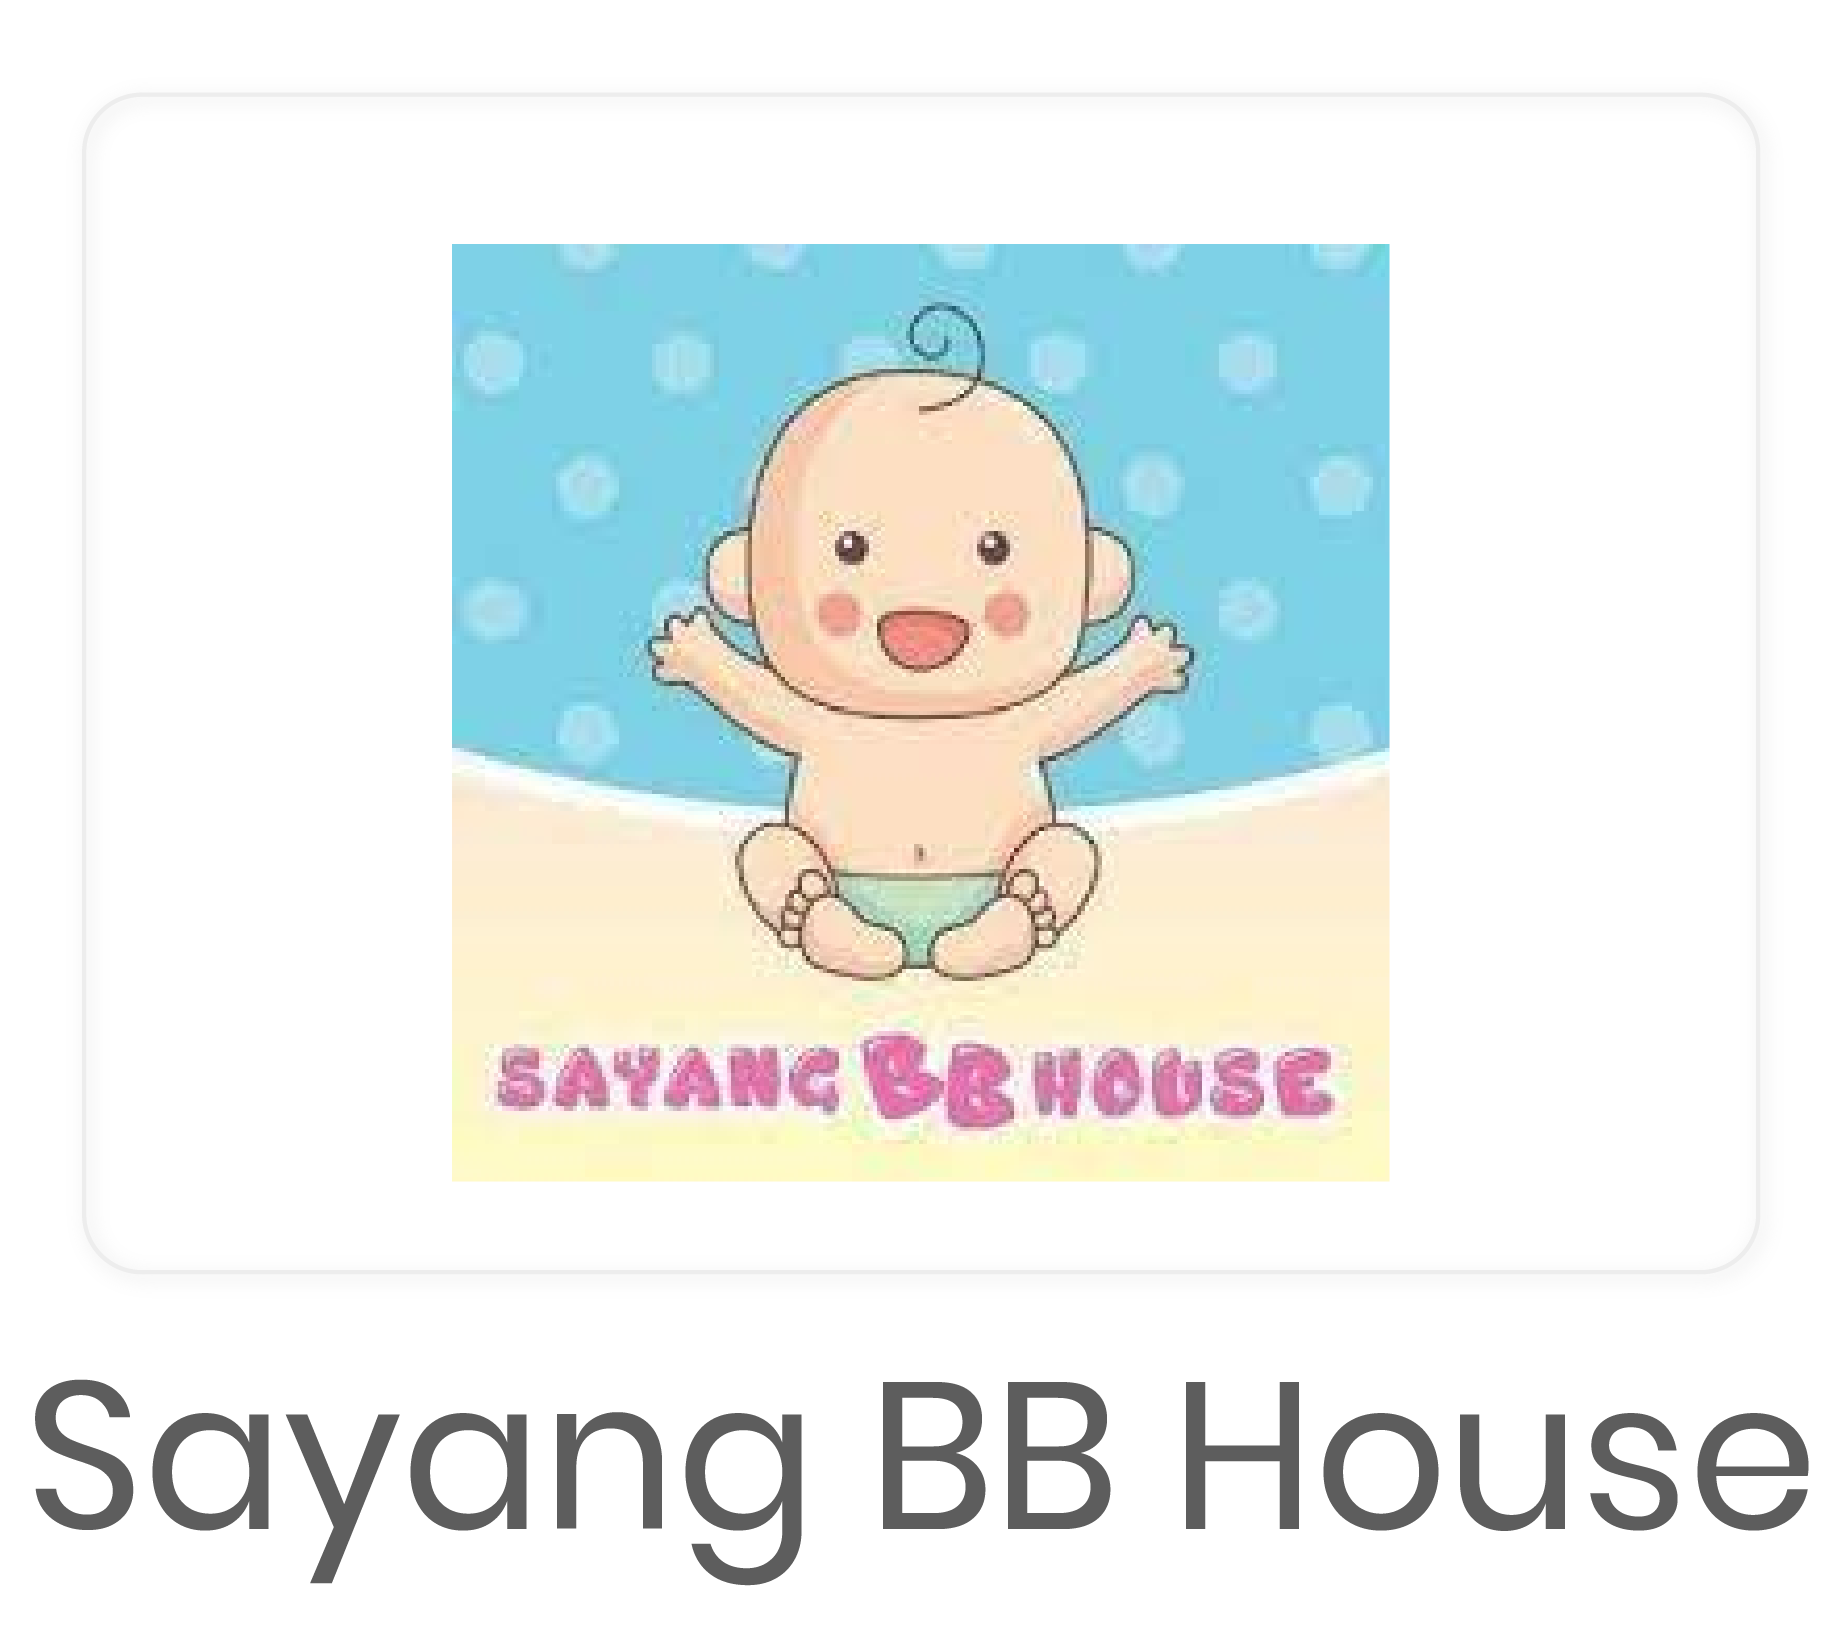 Sayang+BB+House-25.png